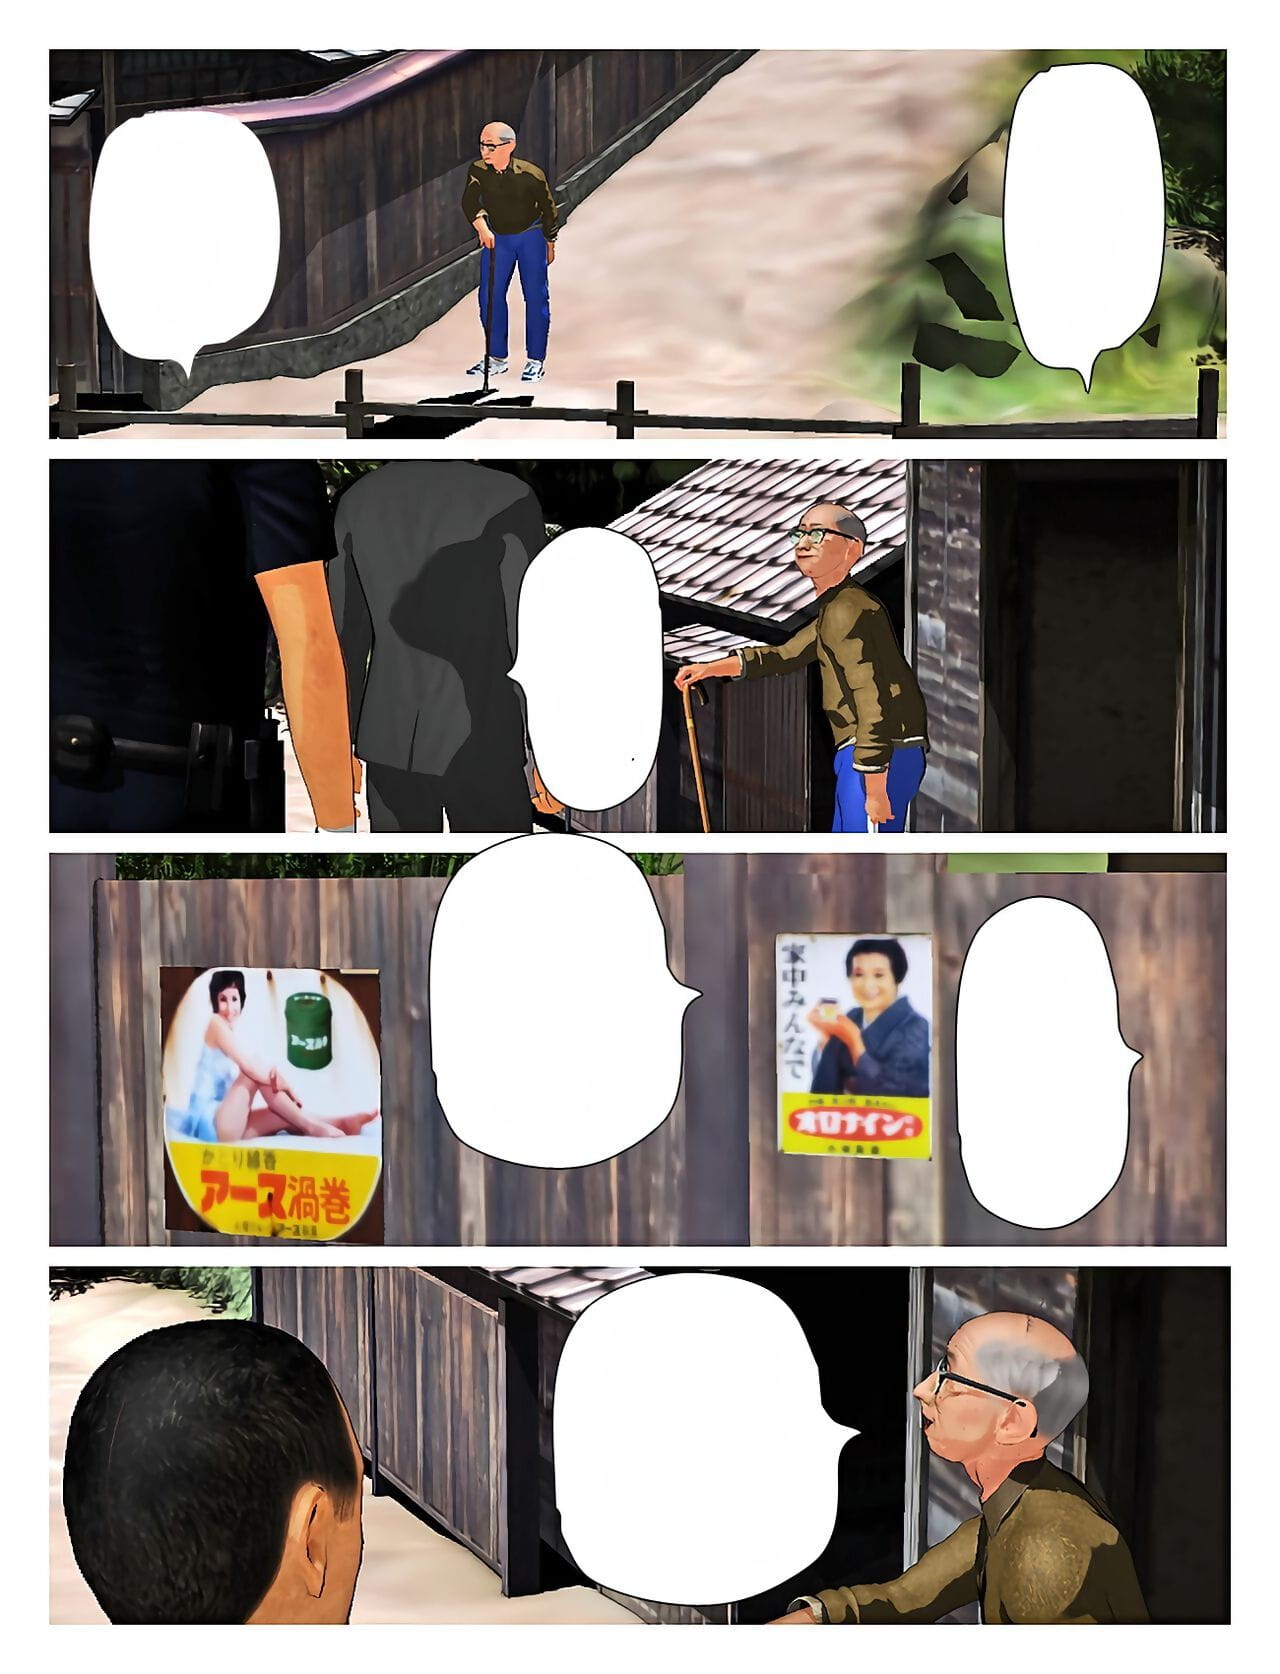 ฆ่า คน กษัตริย์ Kyou ไม่ misako ของเดือนมุฮัรร็อม 2019:4 สูง ความละเอียด textless ส่วนหนึ่ง 3 page 1